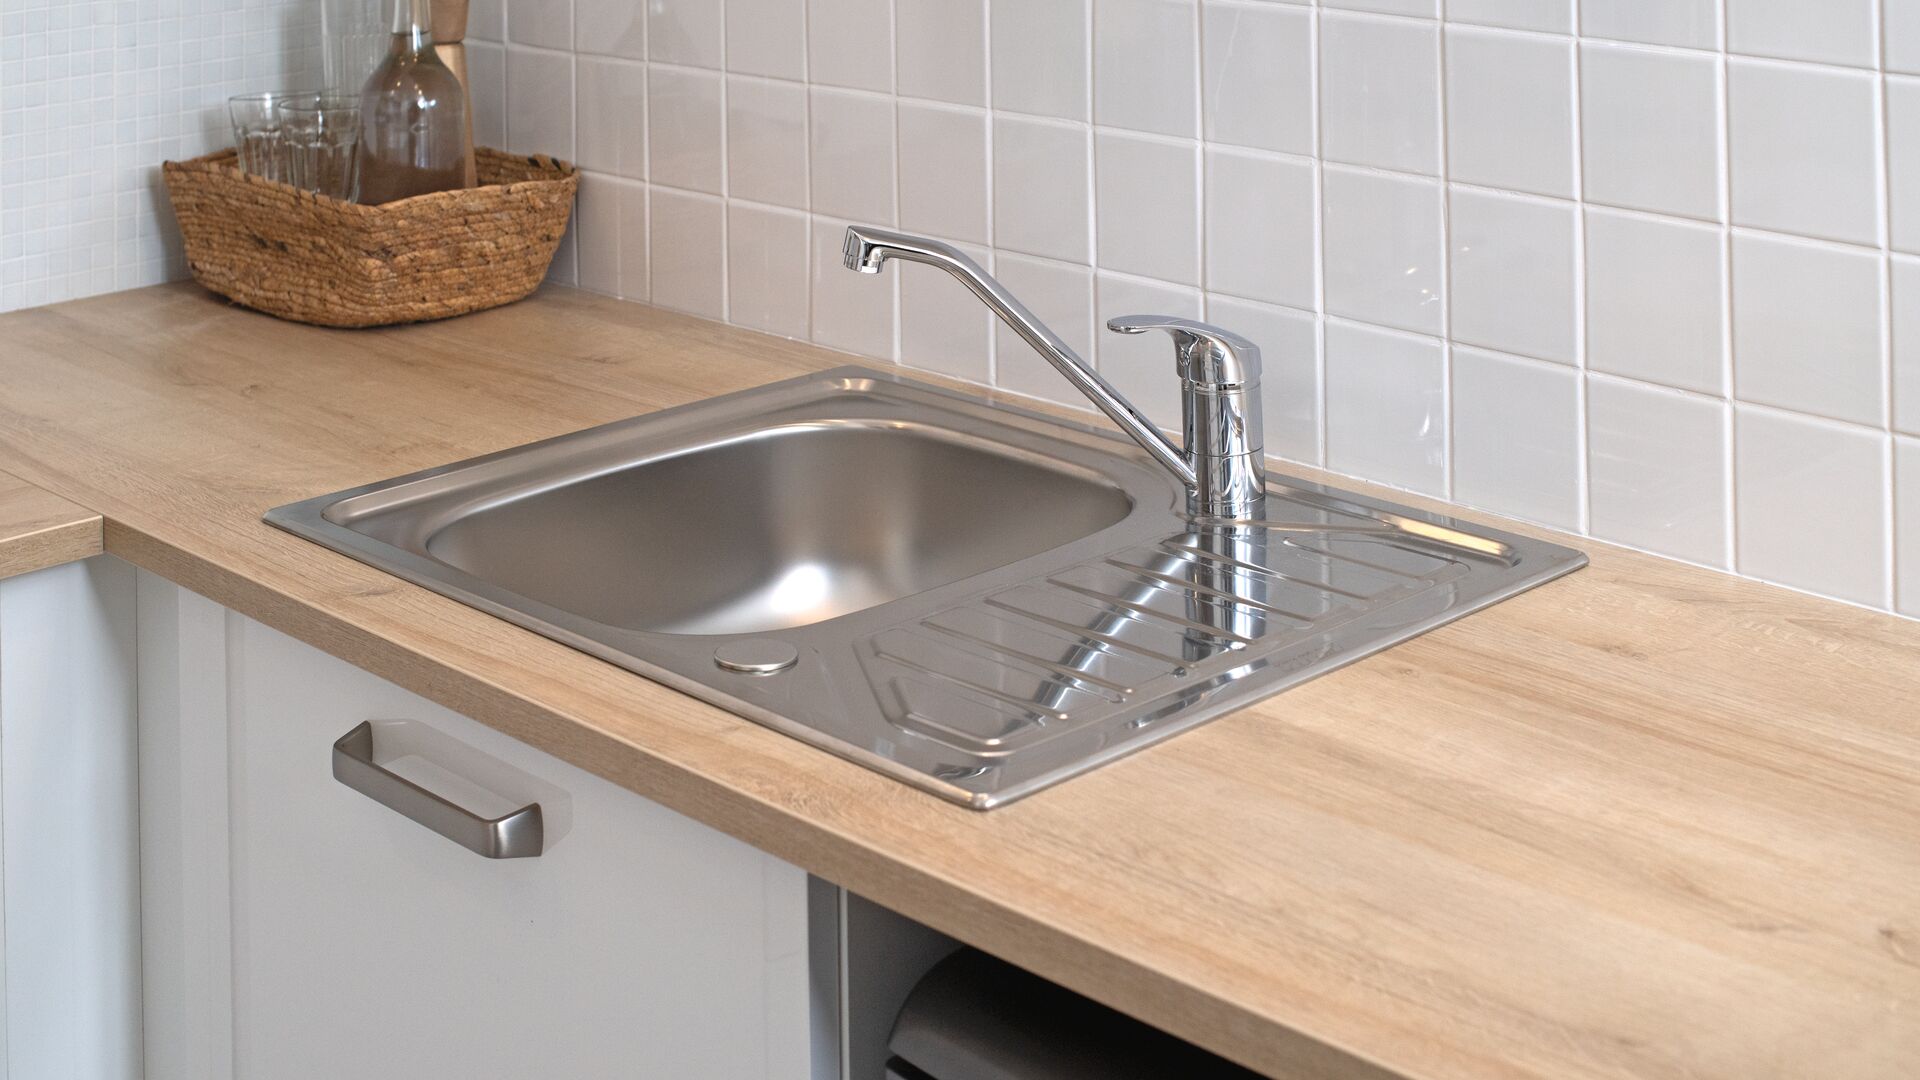 Changer un robinet de cuisine est une opération accessible à tous, pour peu qu’on en connaisse les étapes et qu’on ait un robinet adapté à son évier.